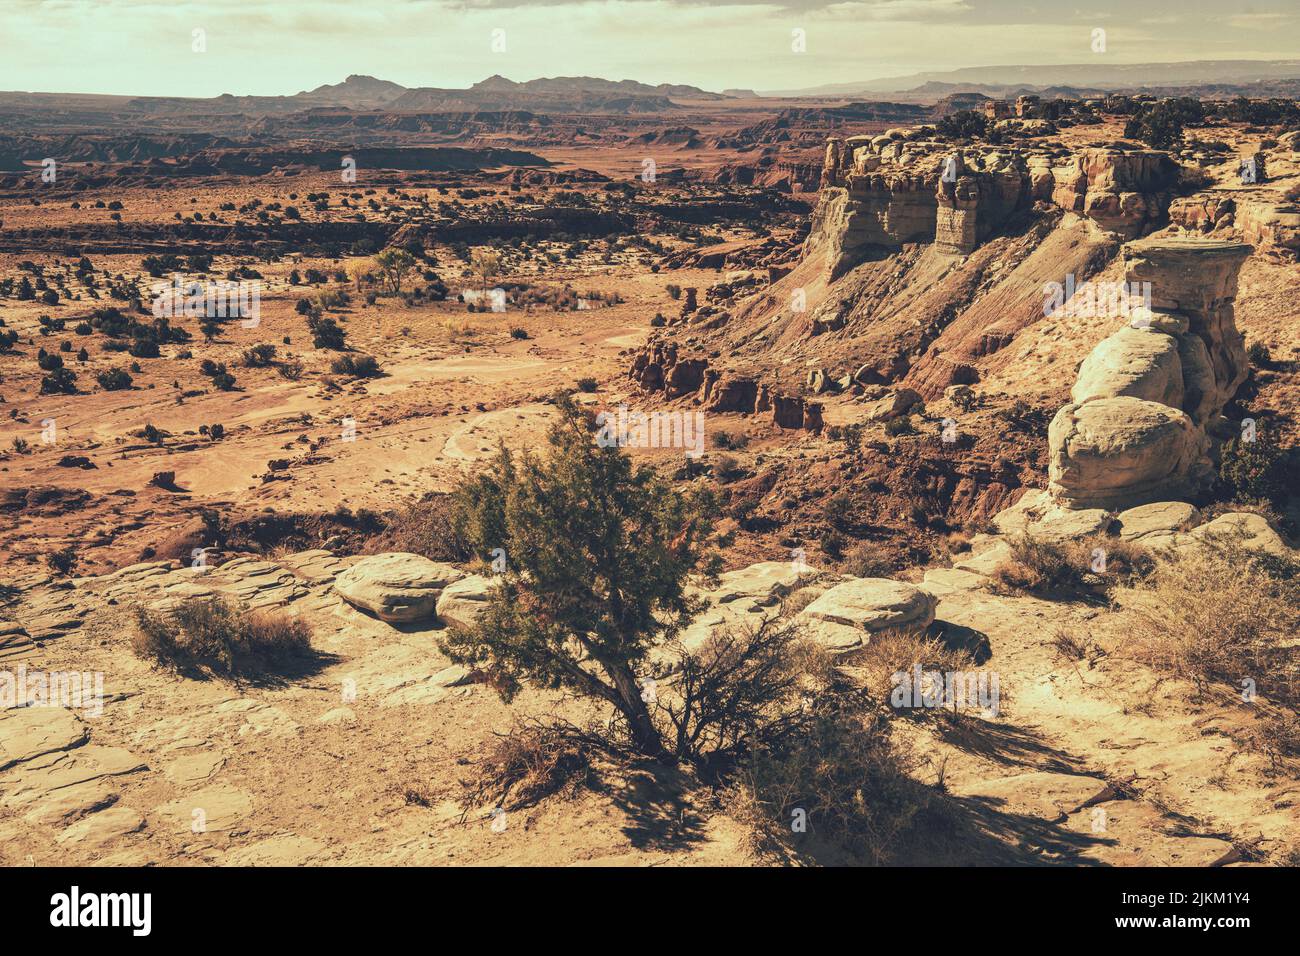 Paysage rocheux de l'Utah.Formations rocheuses colorées.Thème nature. Banque D'Images